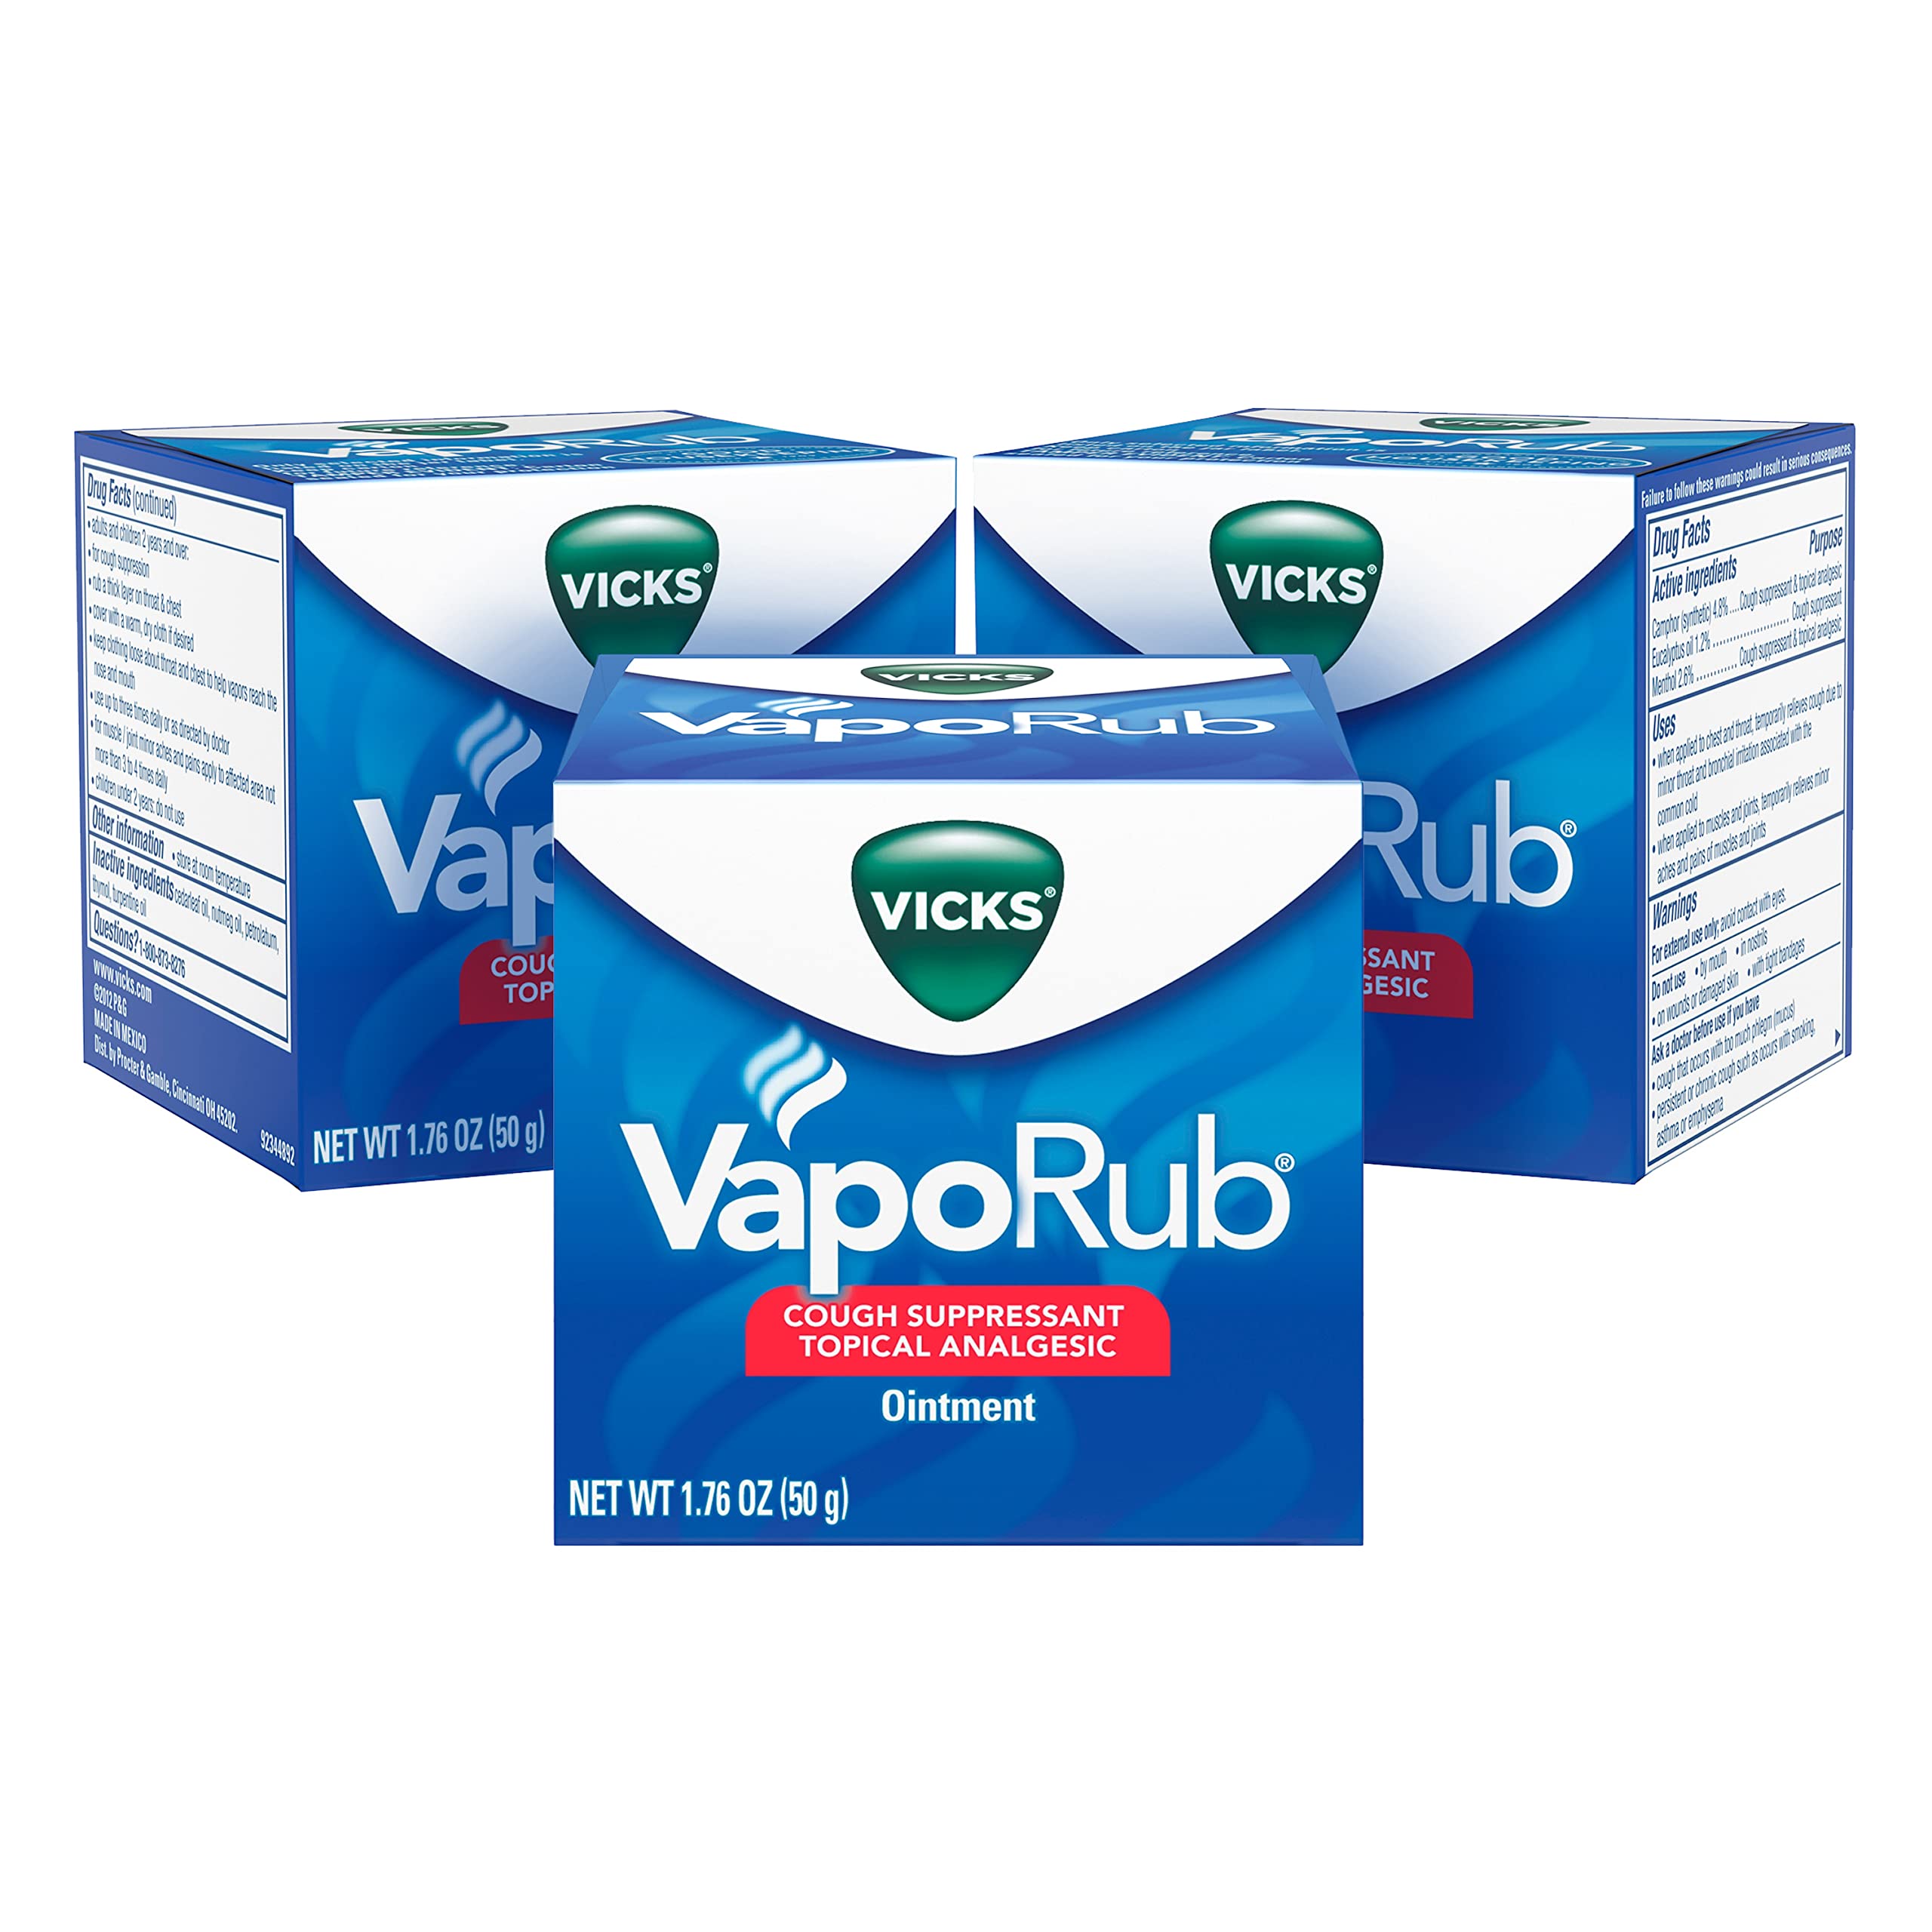 Vicks VapoRub Original Cough Suppressant Medicated Topical